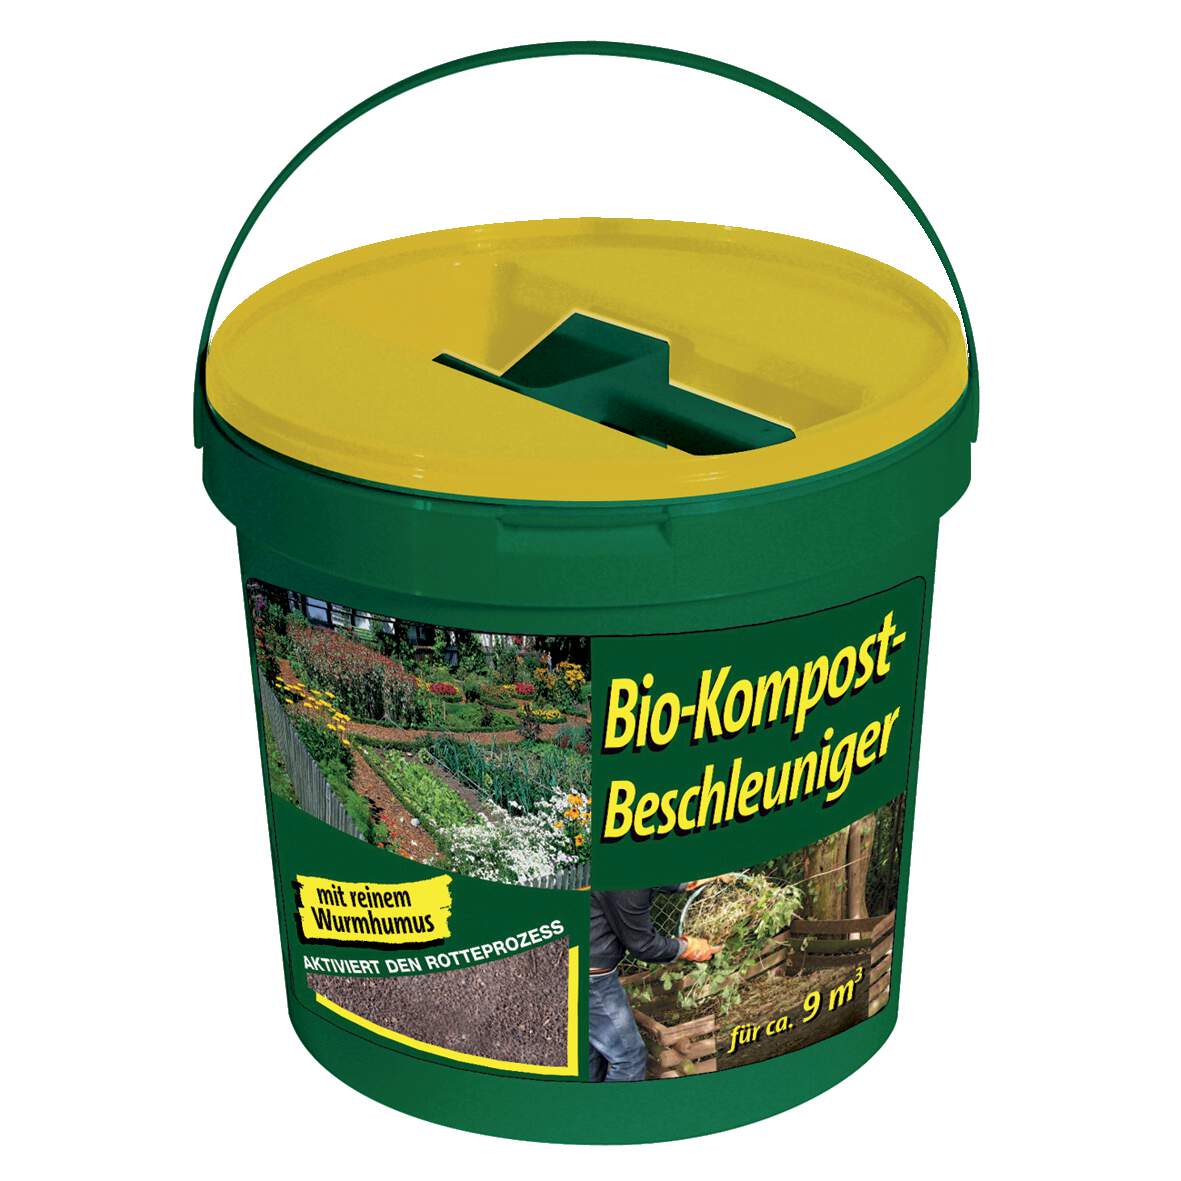 1192064 - Kompostbeschleuniger Bio 7,5kg